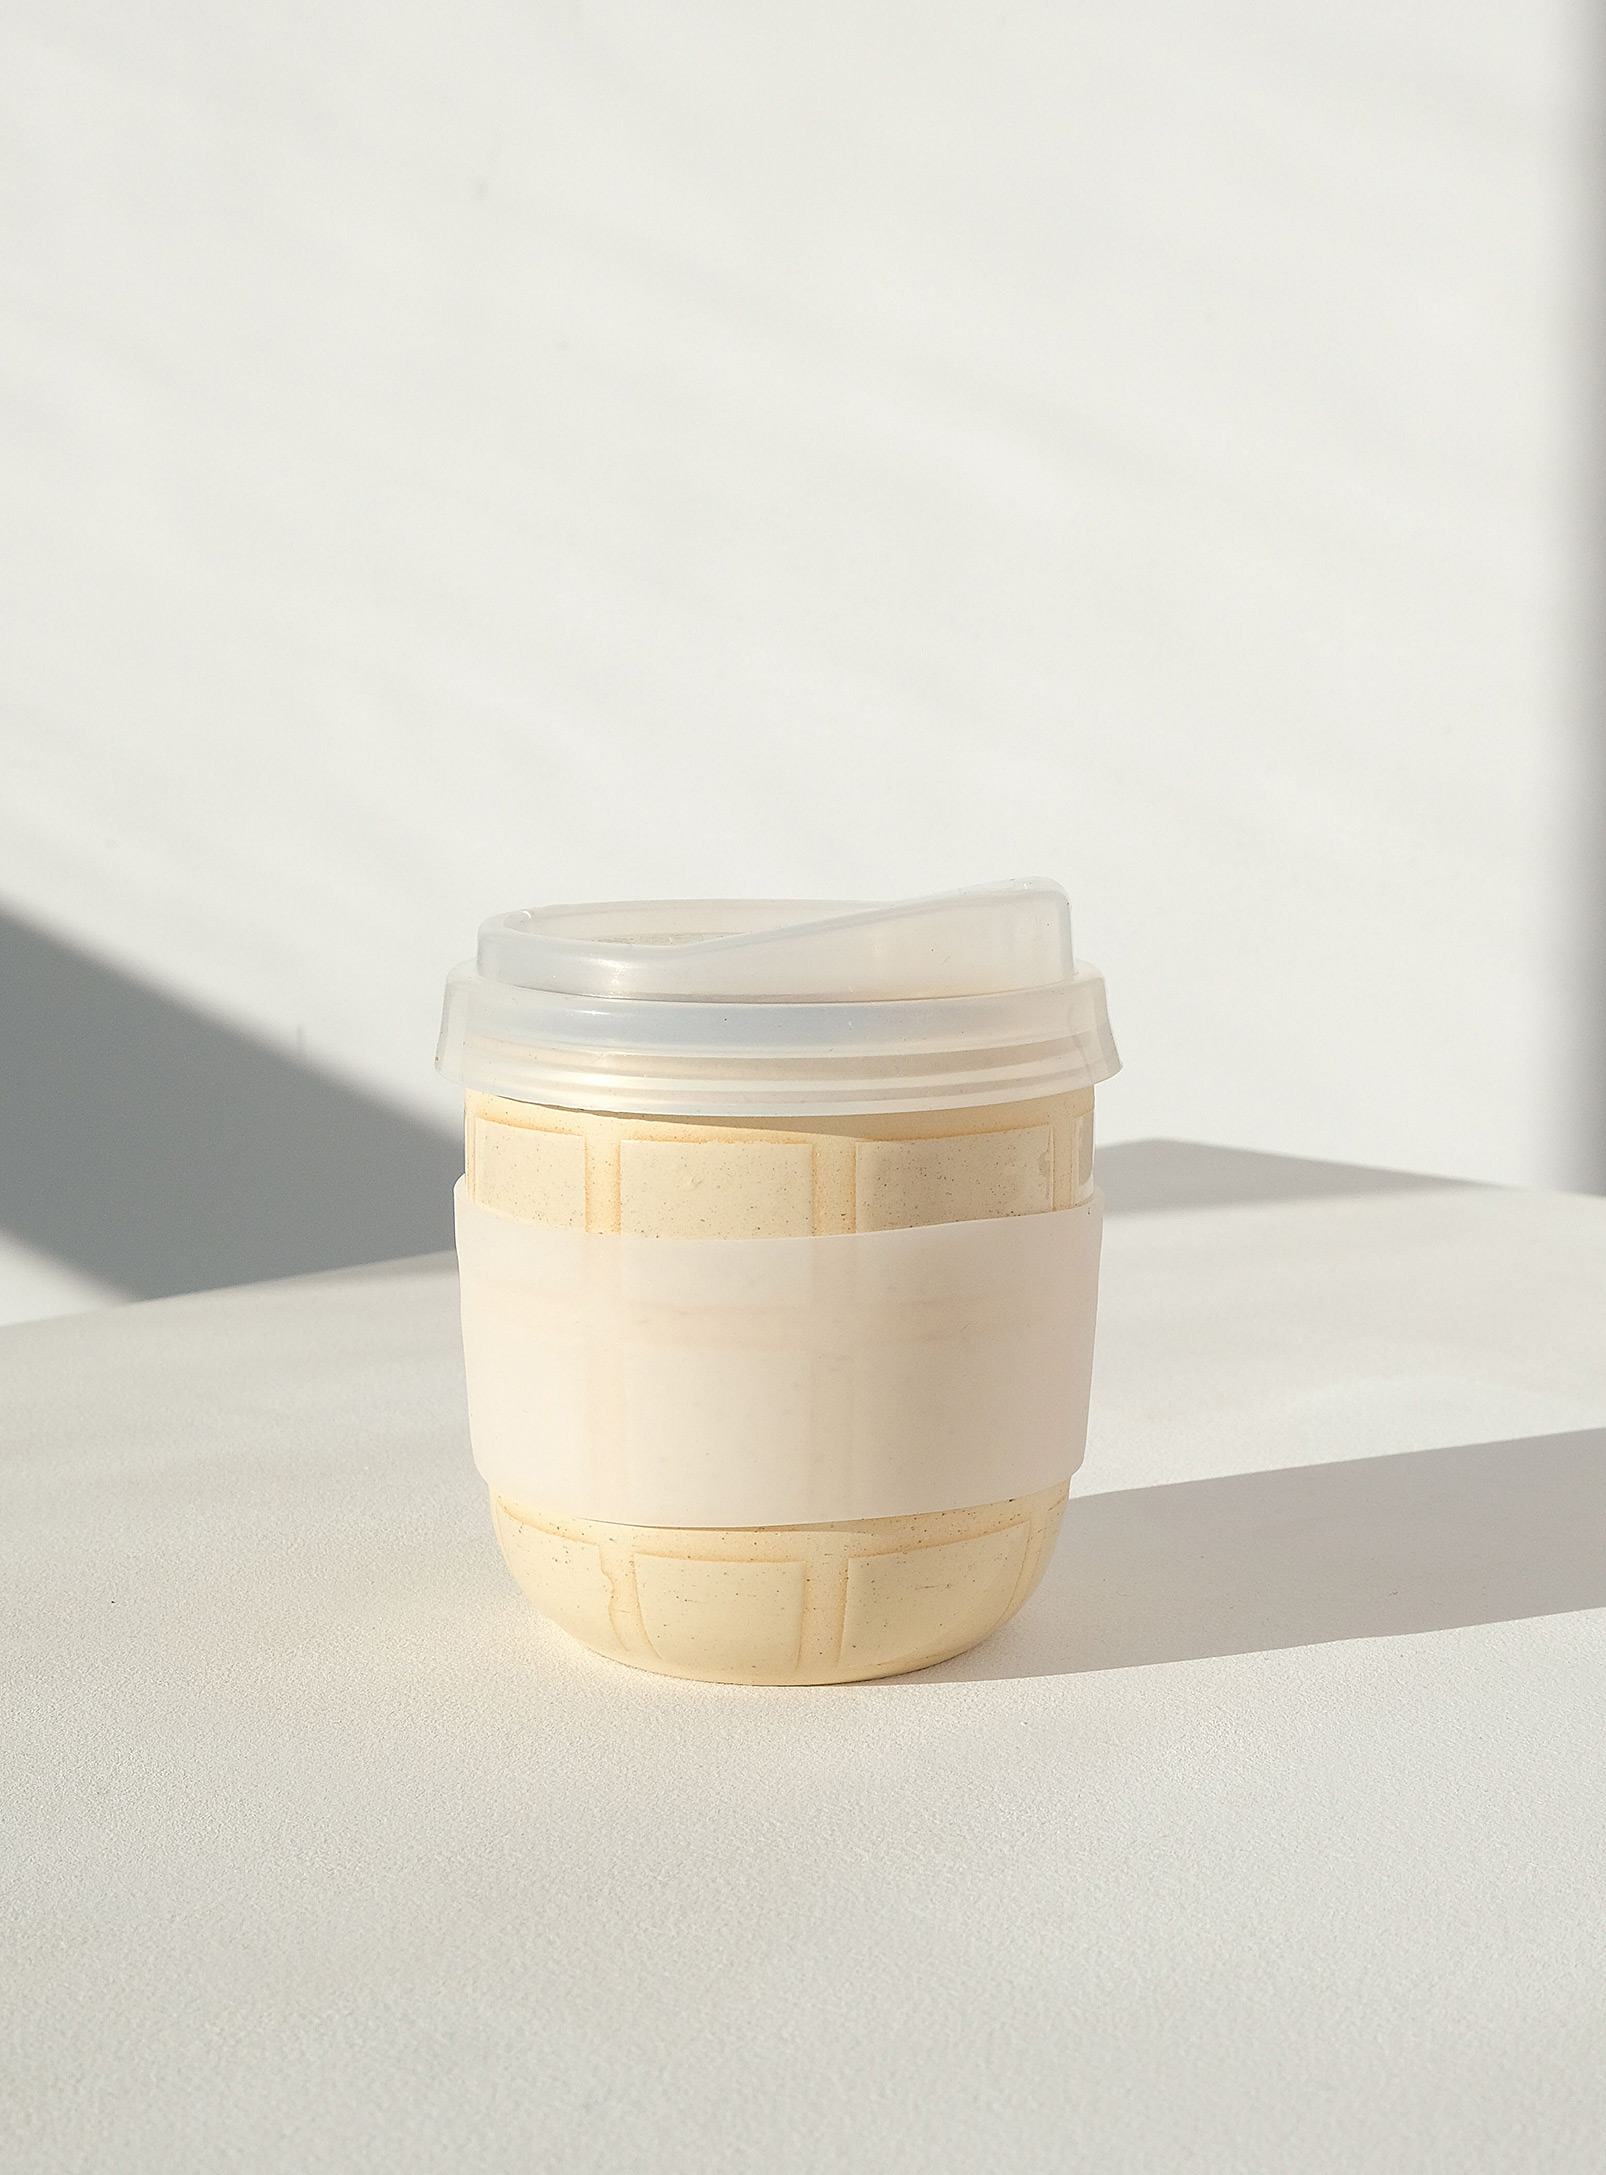 Pms Tiled Travel Mug In Cream Beige